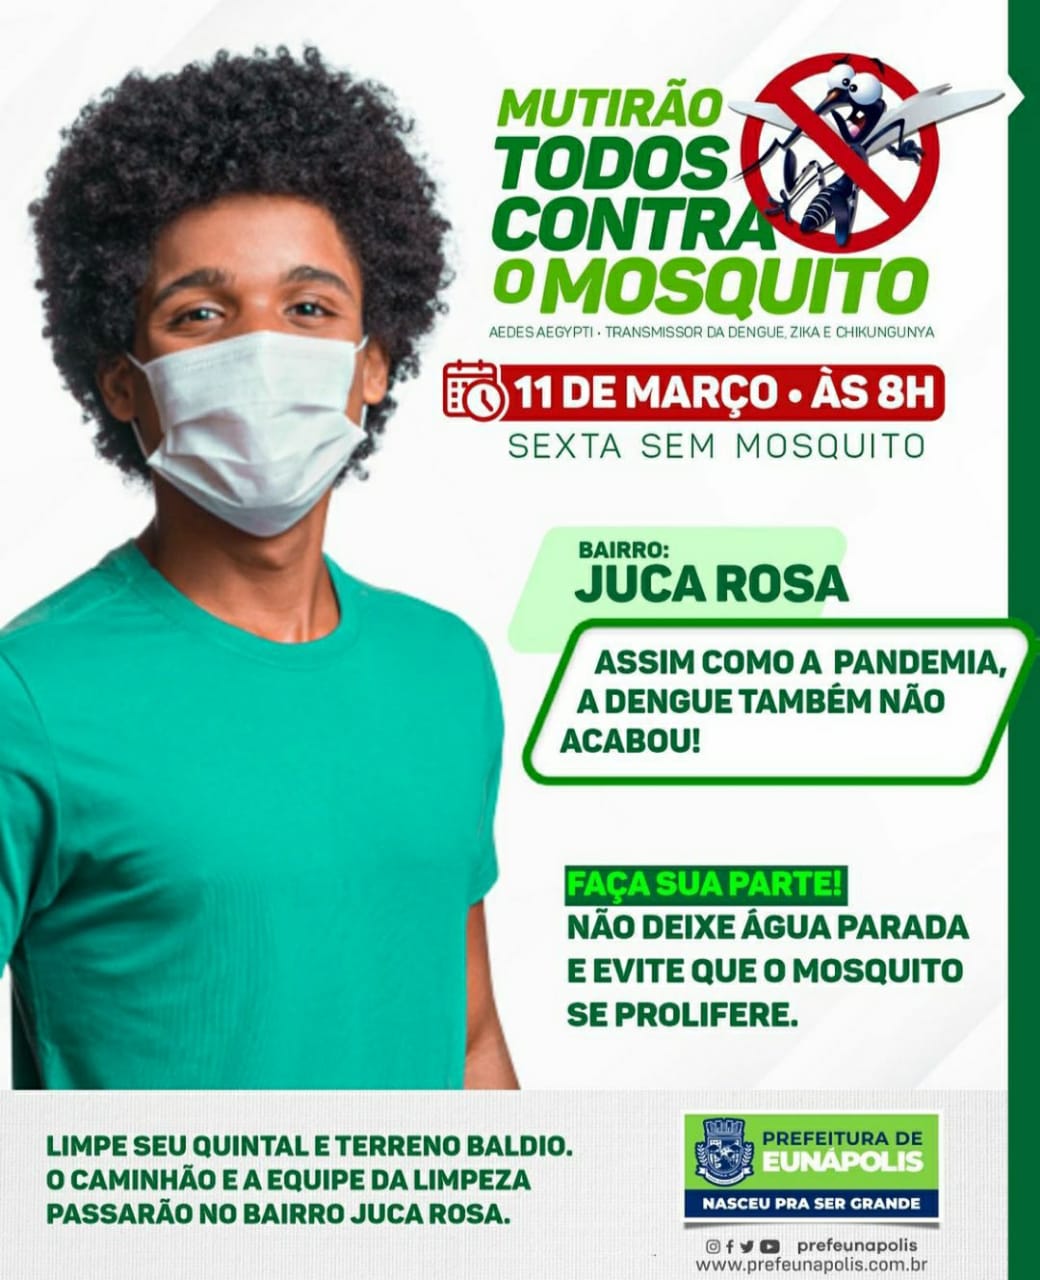 Prefeitura de Eunápolis promove “Mutirão Todos Contra o Mosquito” no bairro Juca Rosa nesta sexta 14